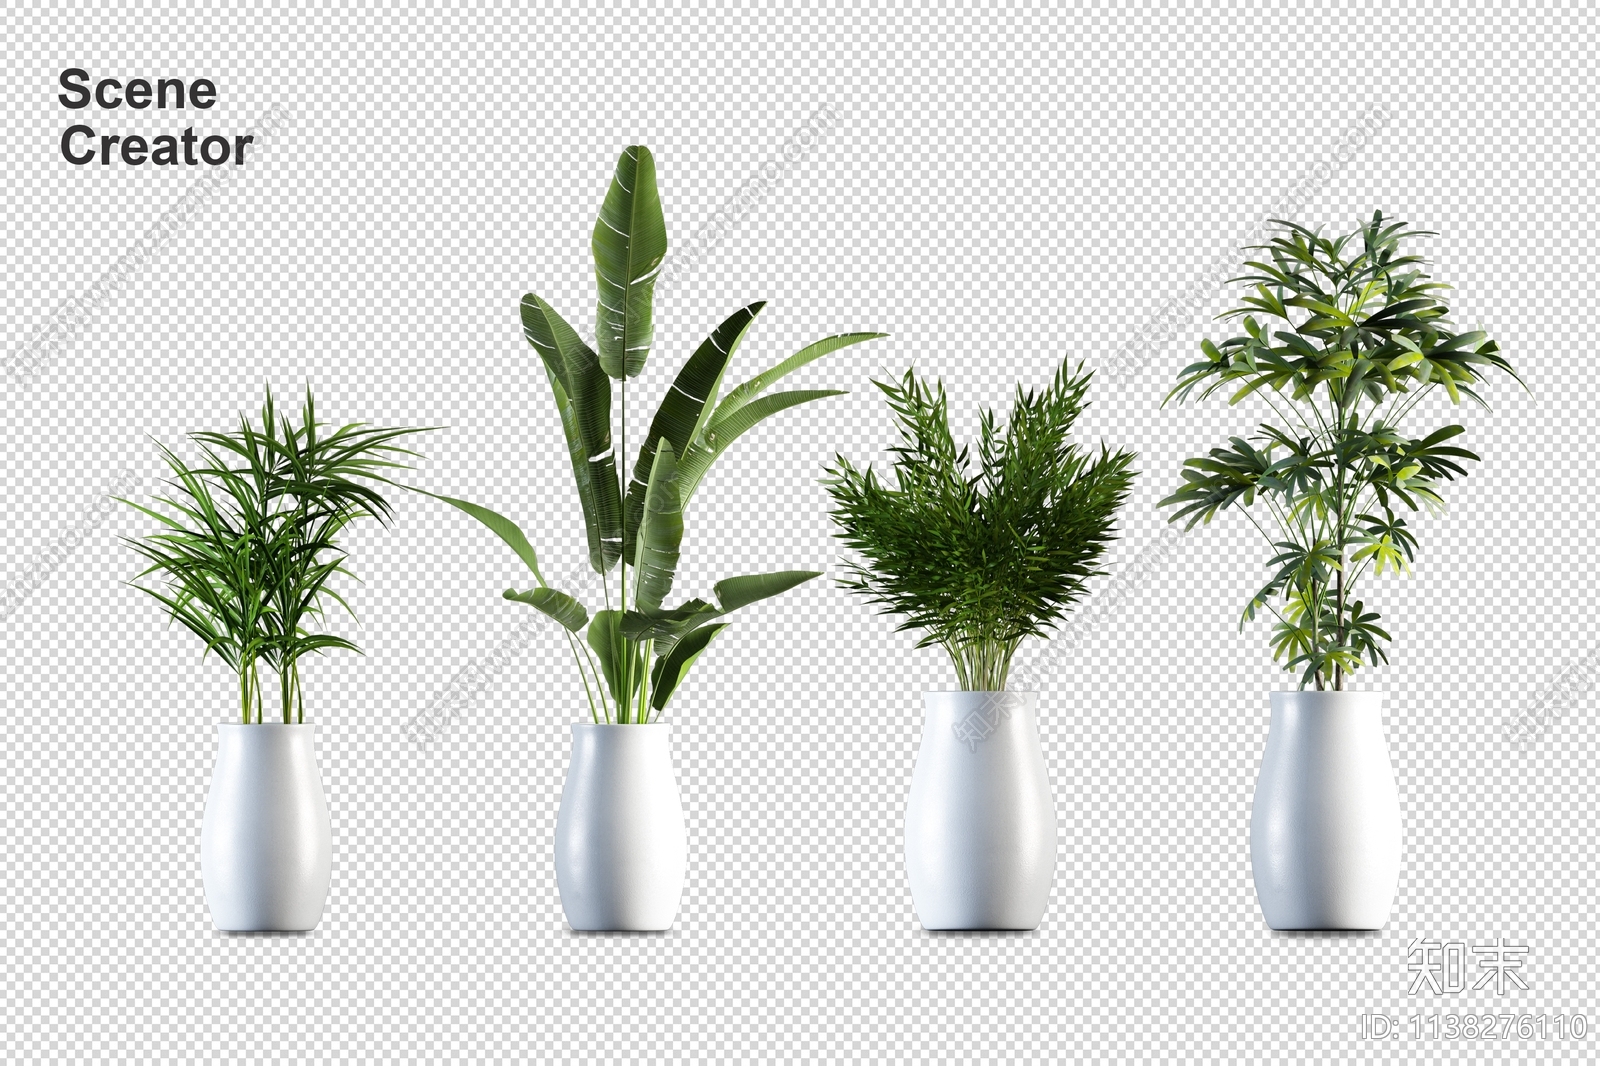 室内盆栽植物效果图PSD免抠贴图下载【ID:1127701420】_【知末网贴图库】